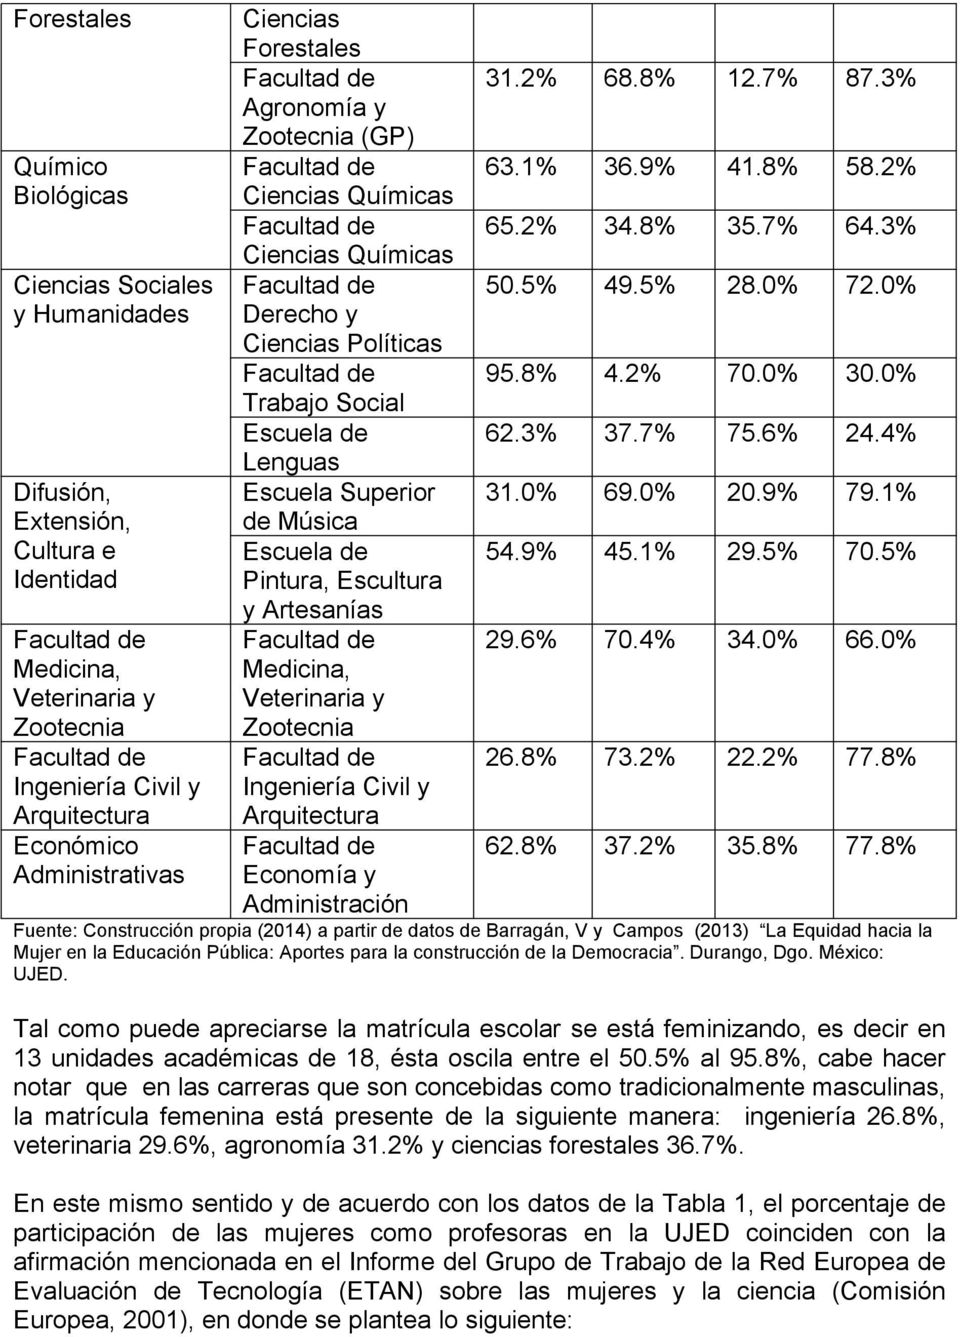 Medicina, Veterinaria y Zootecnia Ingeniería Civil y Arquitectura Economía y Adminitración 31.2% 68.8% 12.7% 87.3% 63.1% 36.9% 41.8% 58.2% 65.2% 34.8% 35.7% 64.3% 50.5% 49.5% 28.0% 72.0% 95.8% 4.